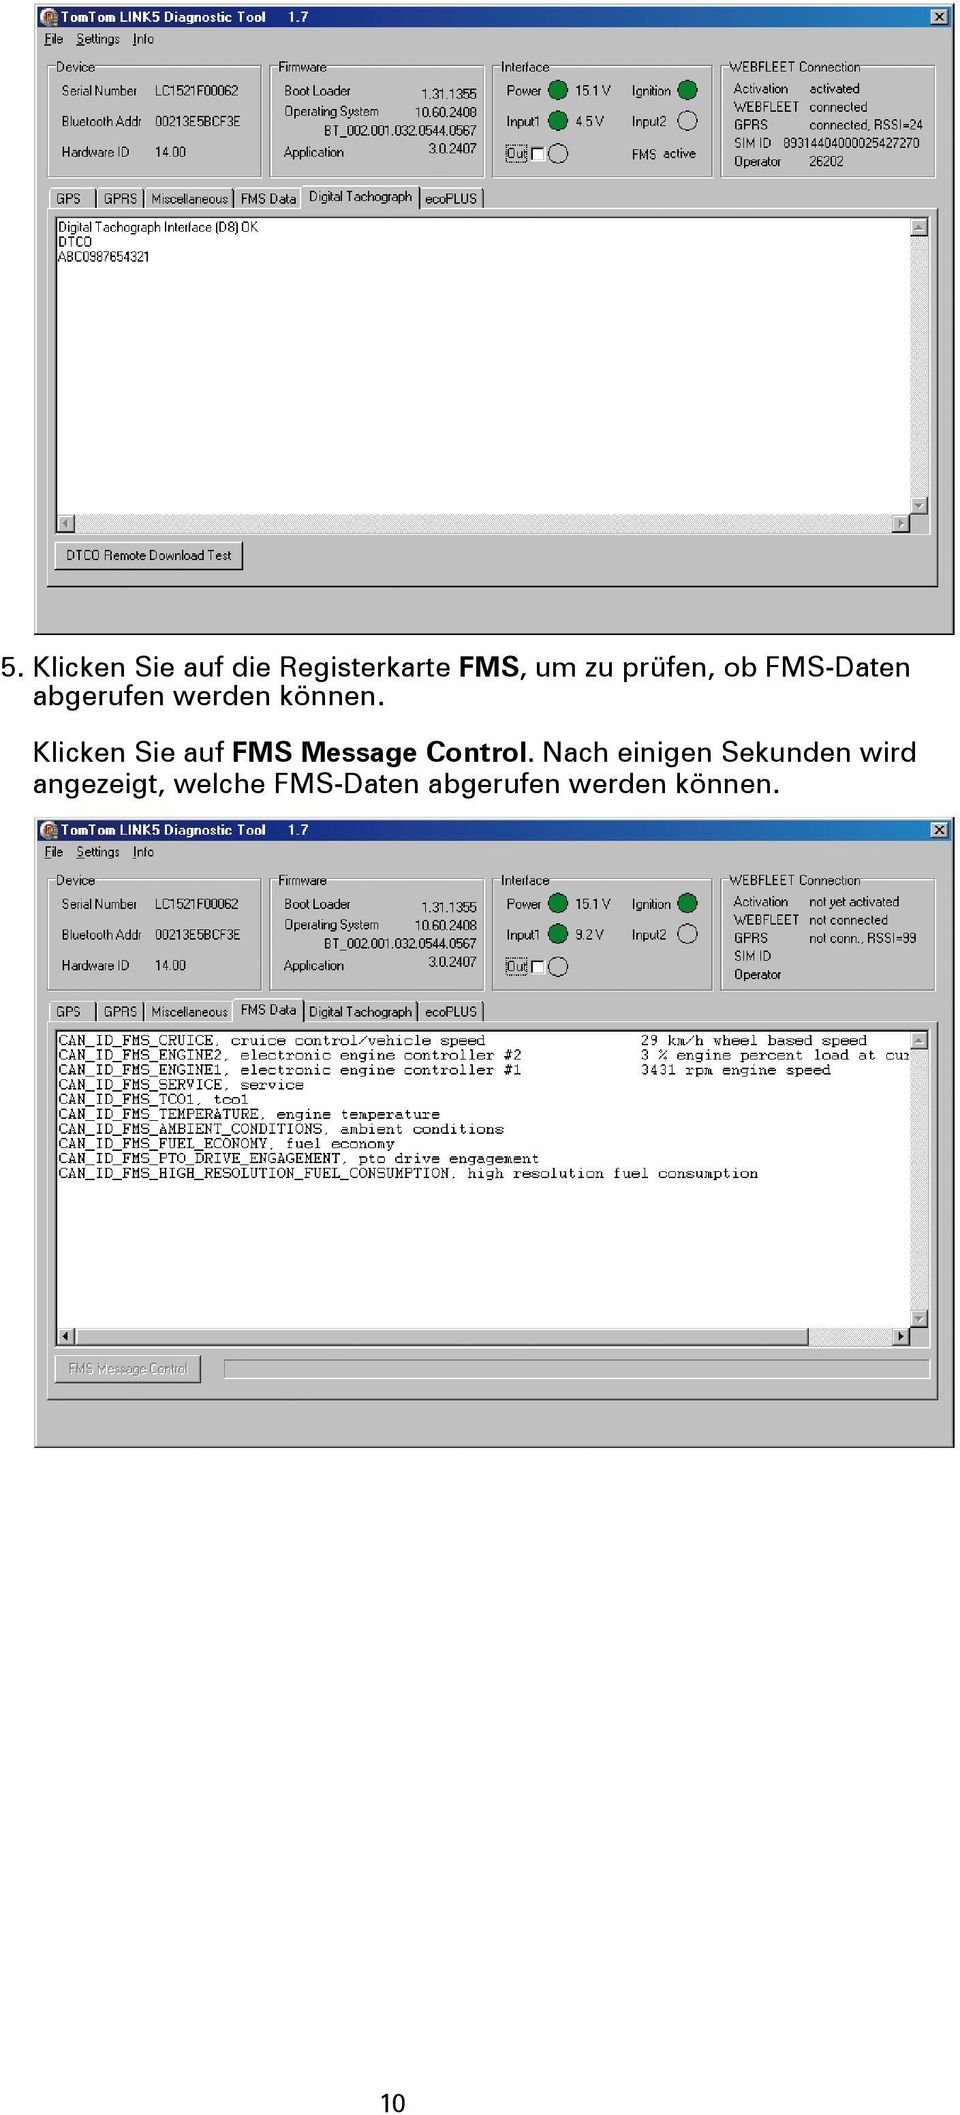 Klicken Sie auf FMS Message Control.